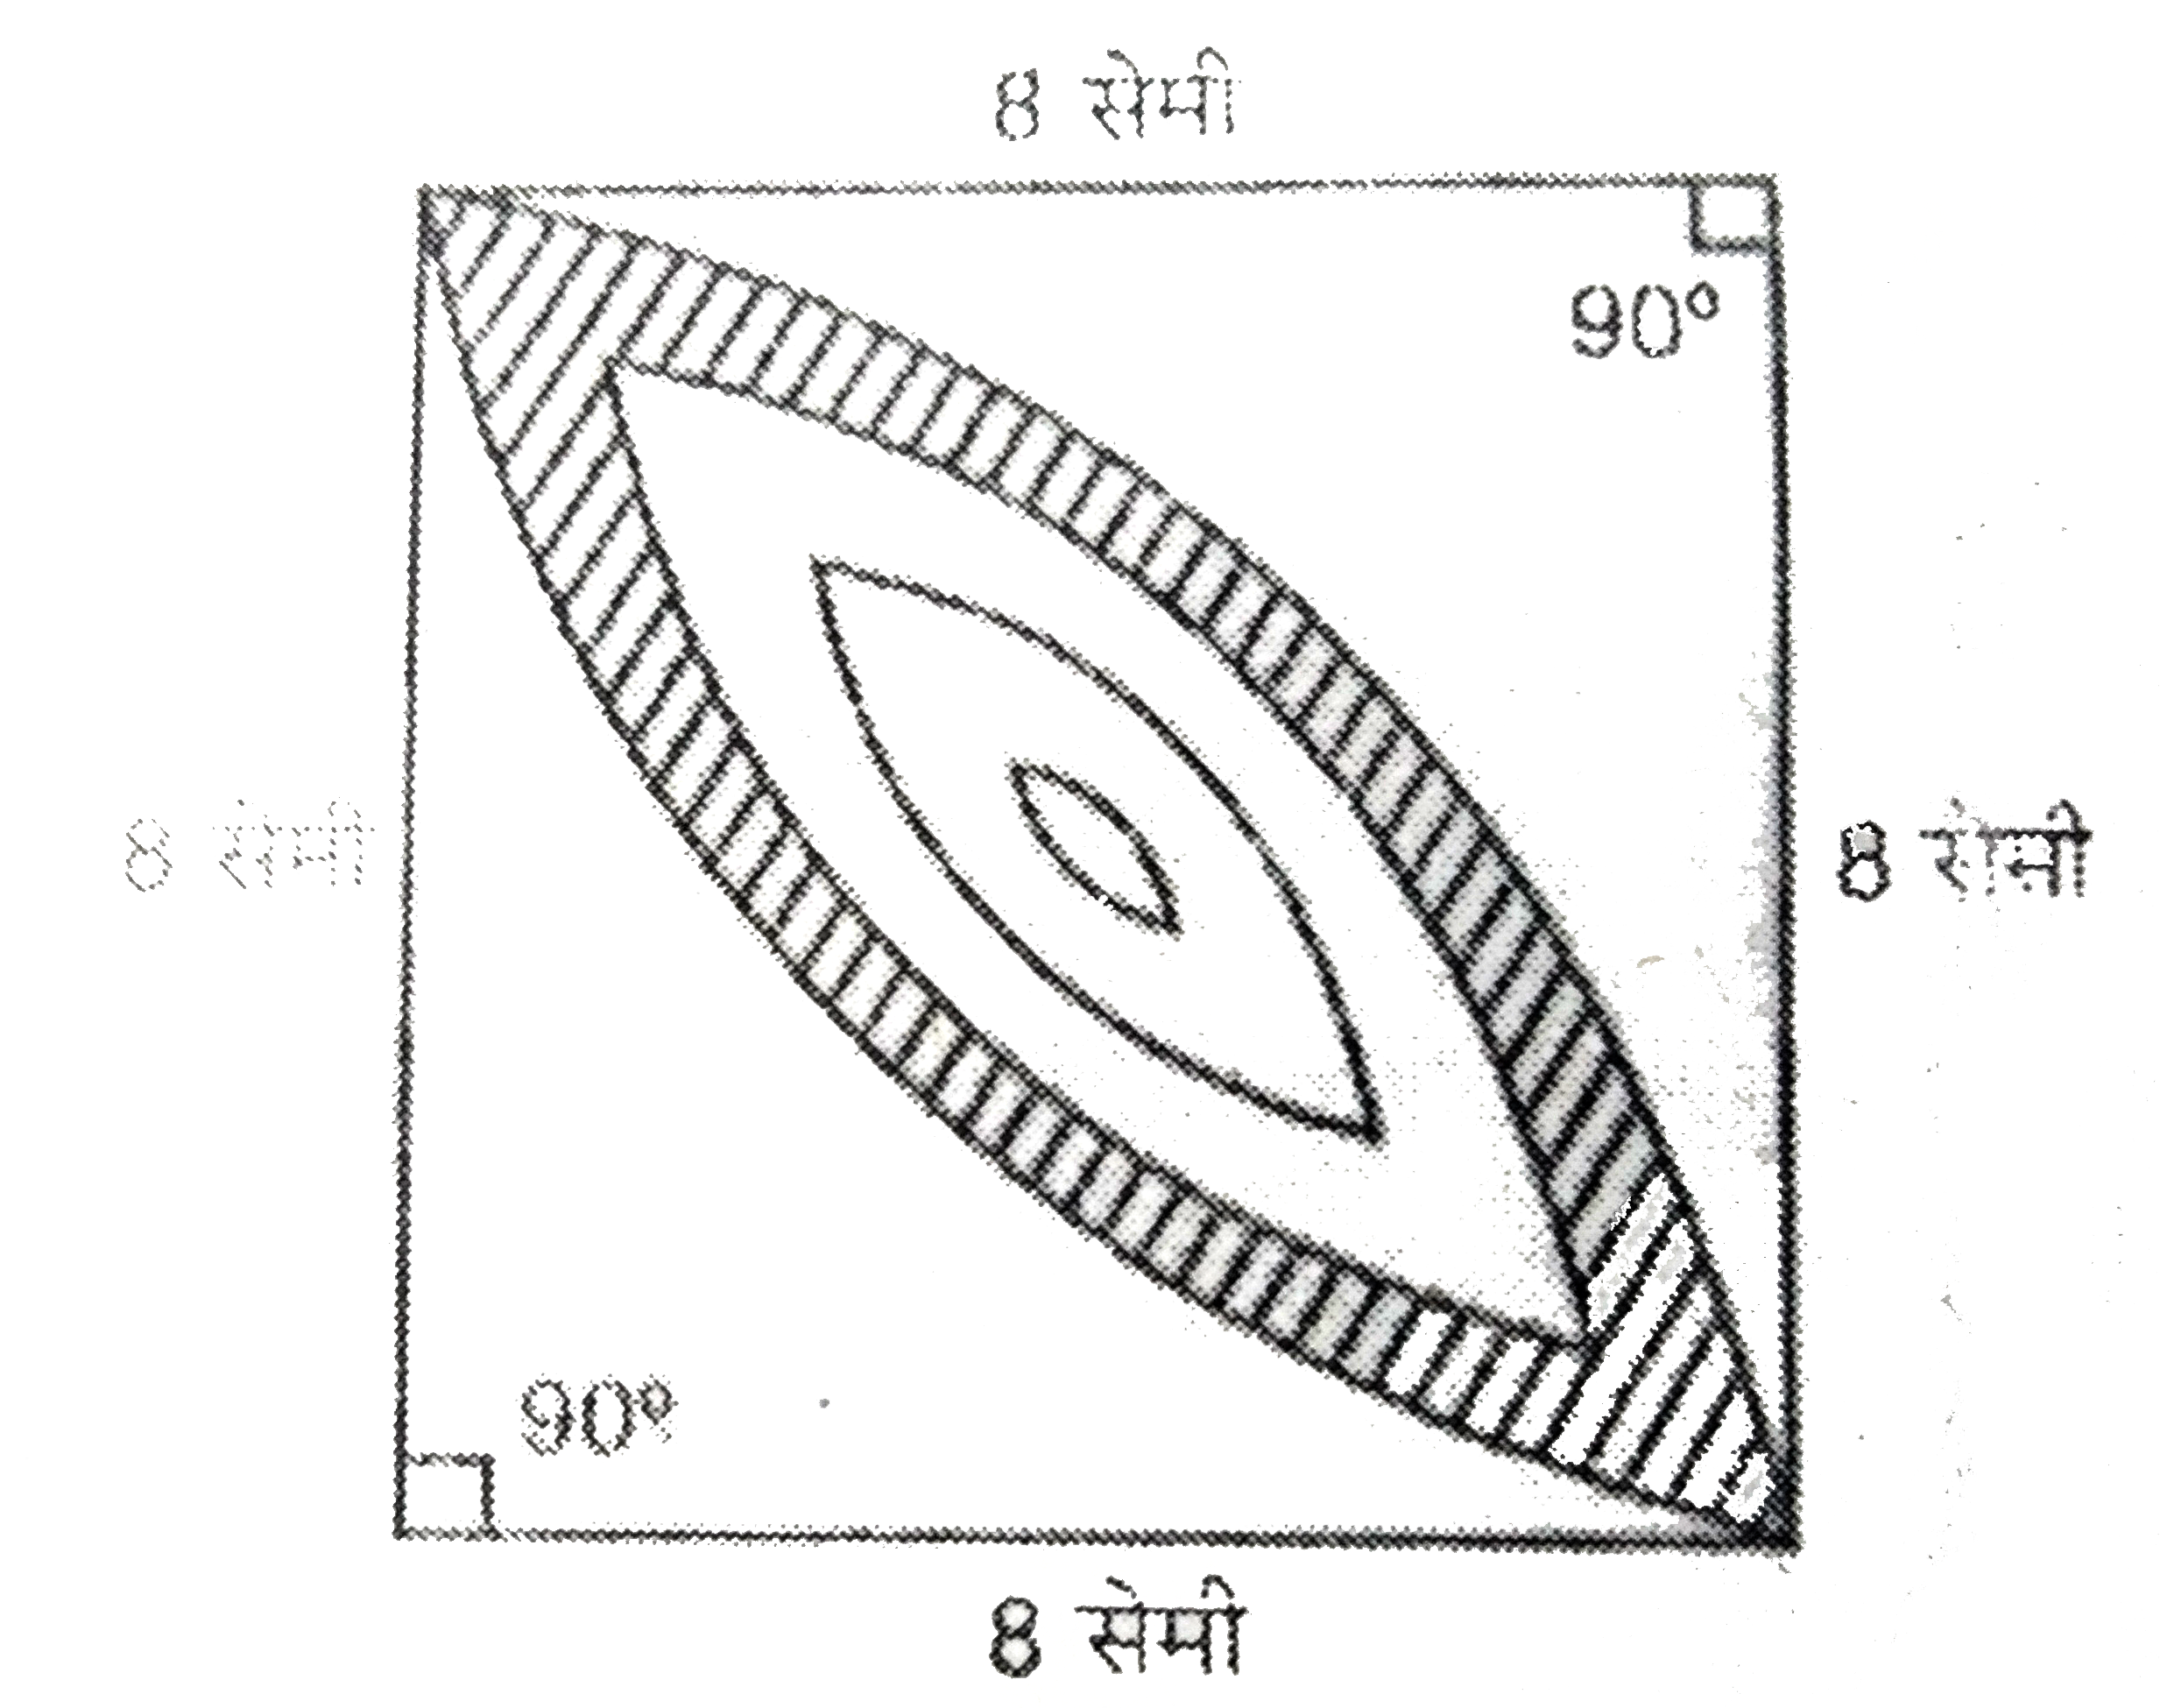 दी हुई आकृति में छायांकित डिजाइन का क्षेत्रफल ज्ञात कीजिए, जो 8 सेमी त्रिज्यााओं वाले दो वृत्तों के चतुर्थाश के बीच उभयनिष्ठ है।